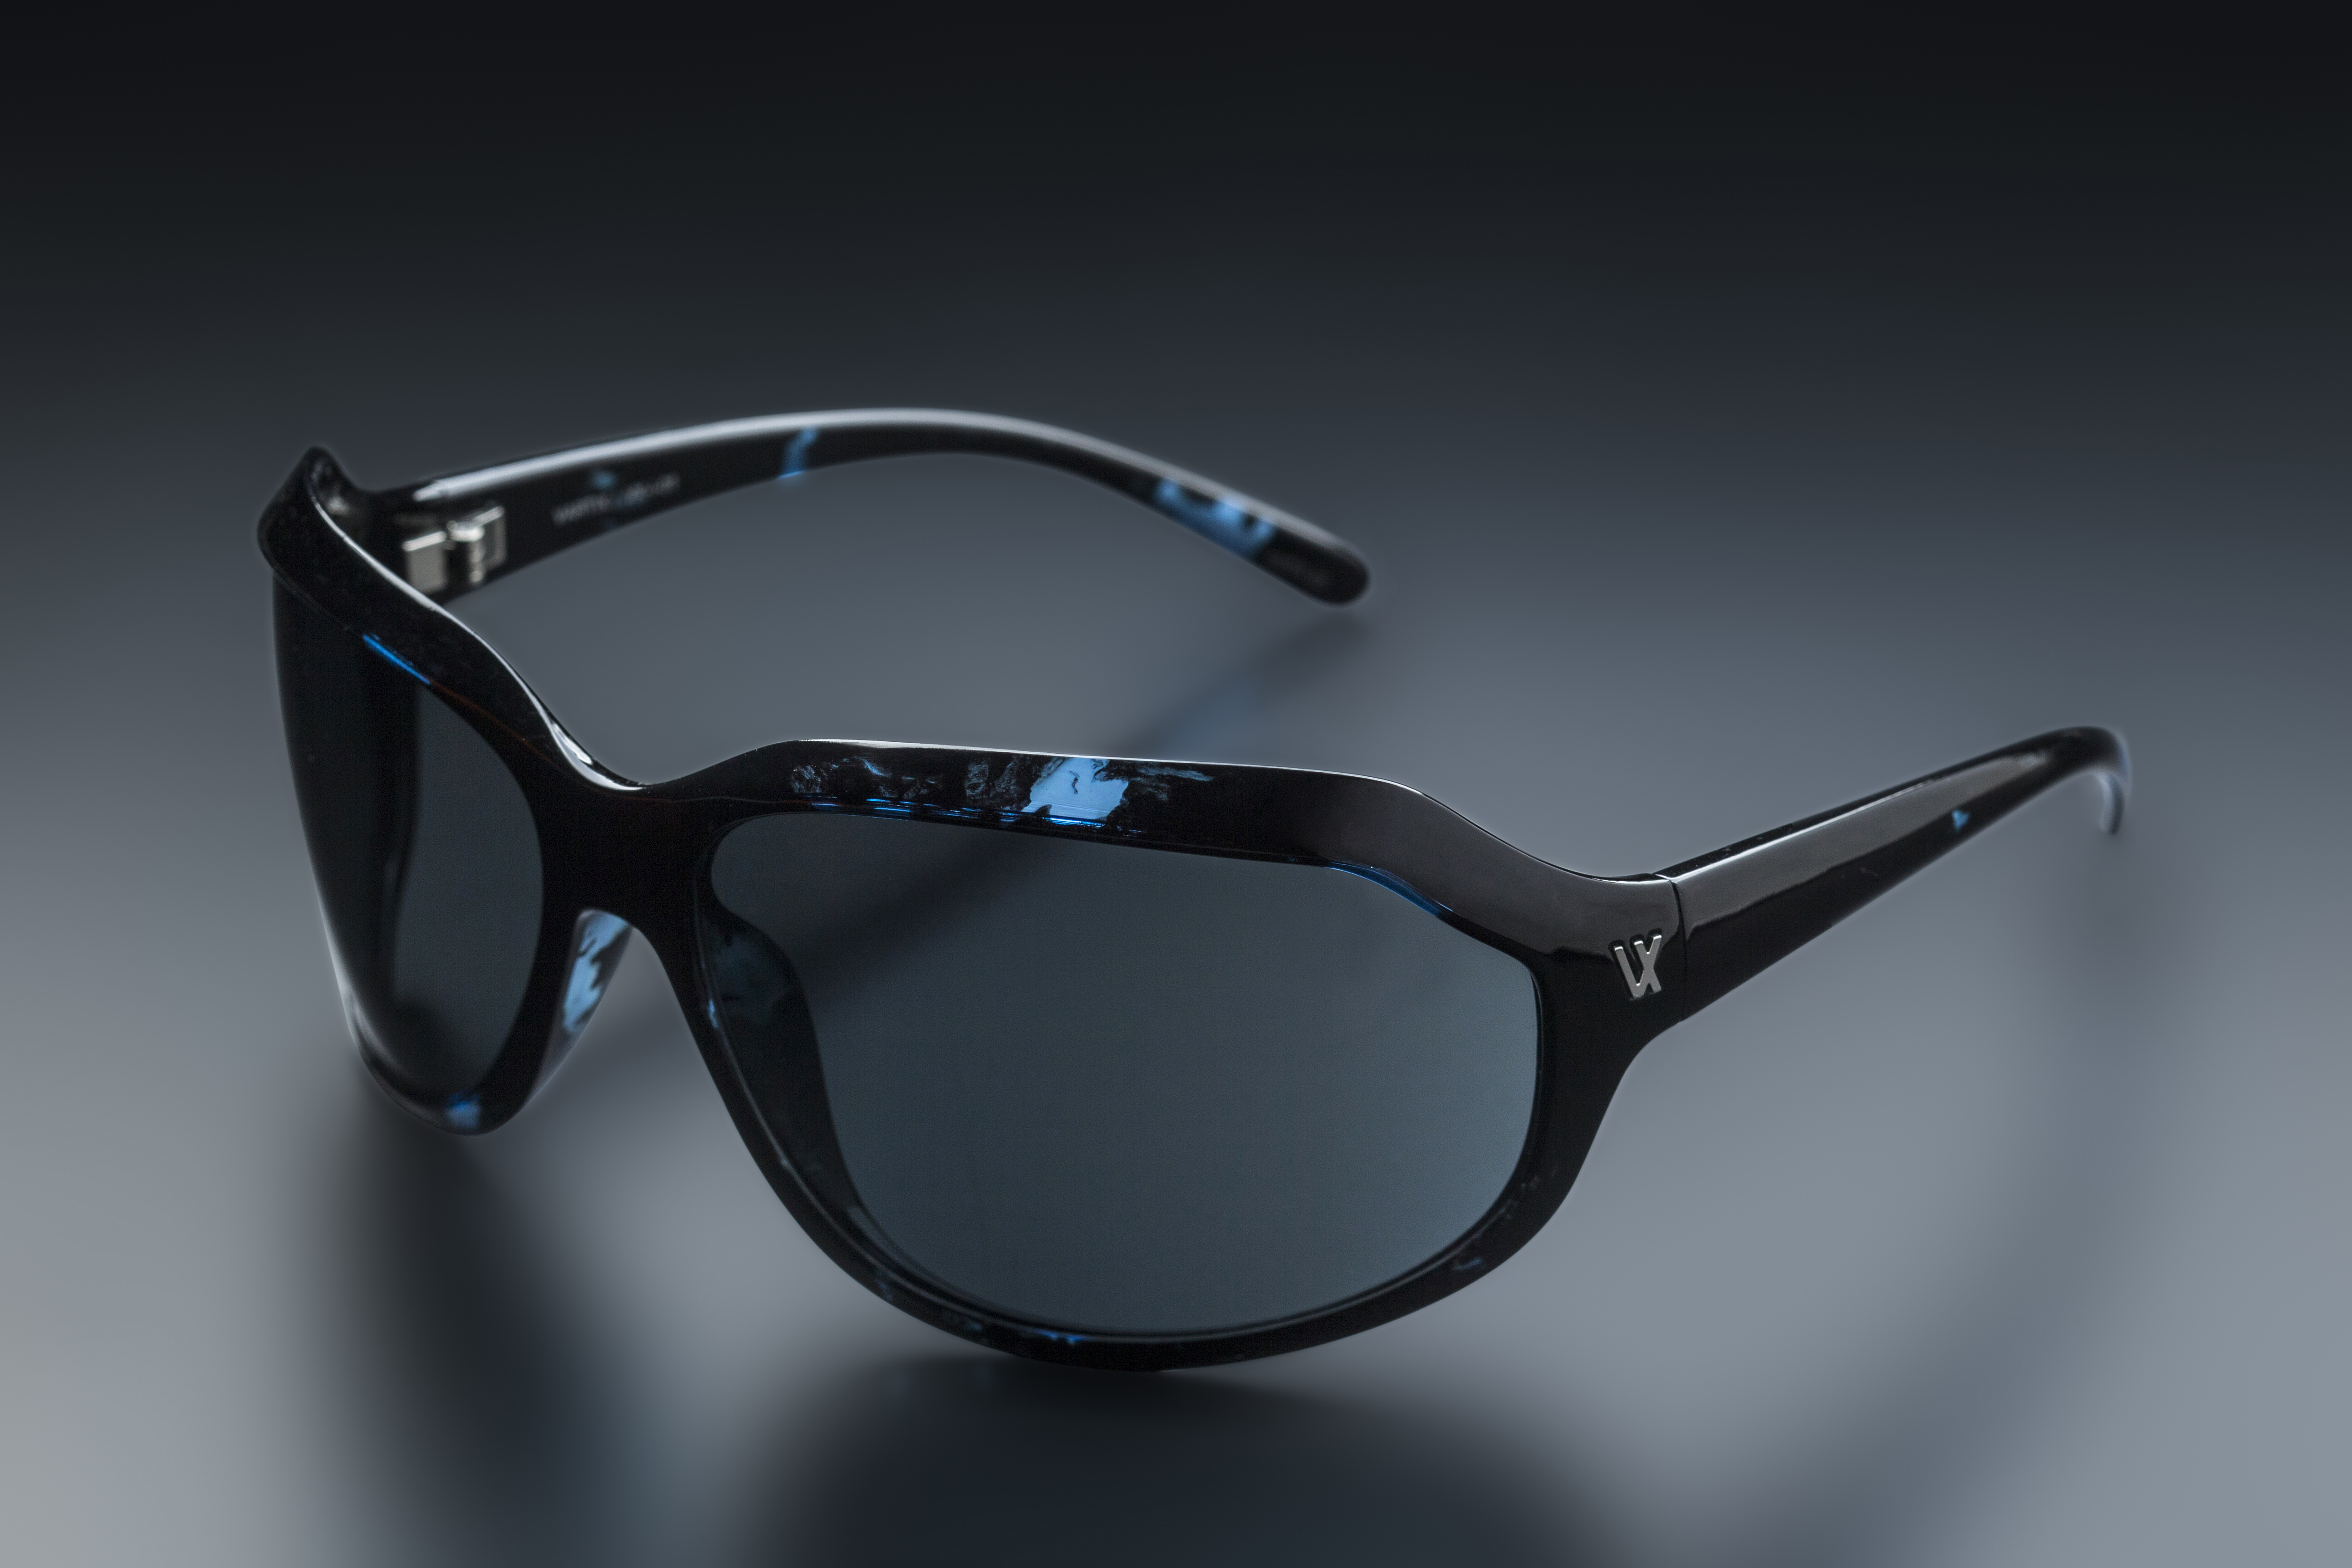 ビジョンメガネ Gacktさんとvartixとのコラボサングラス独占販売決定 Gackt Sunglasses Vx I 01 Fullcolor 17インジェクションモデル 株式会社ビジョンメガネのプレスリリース